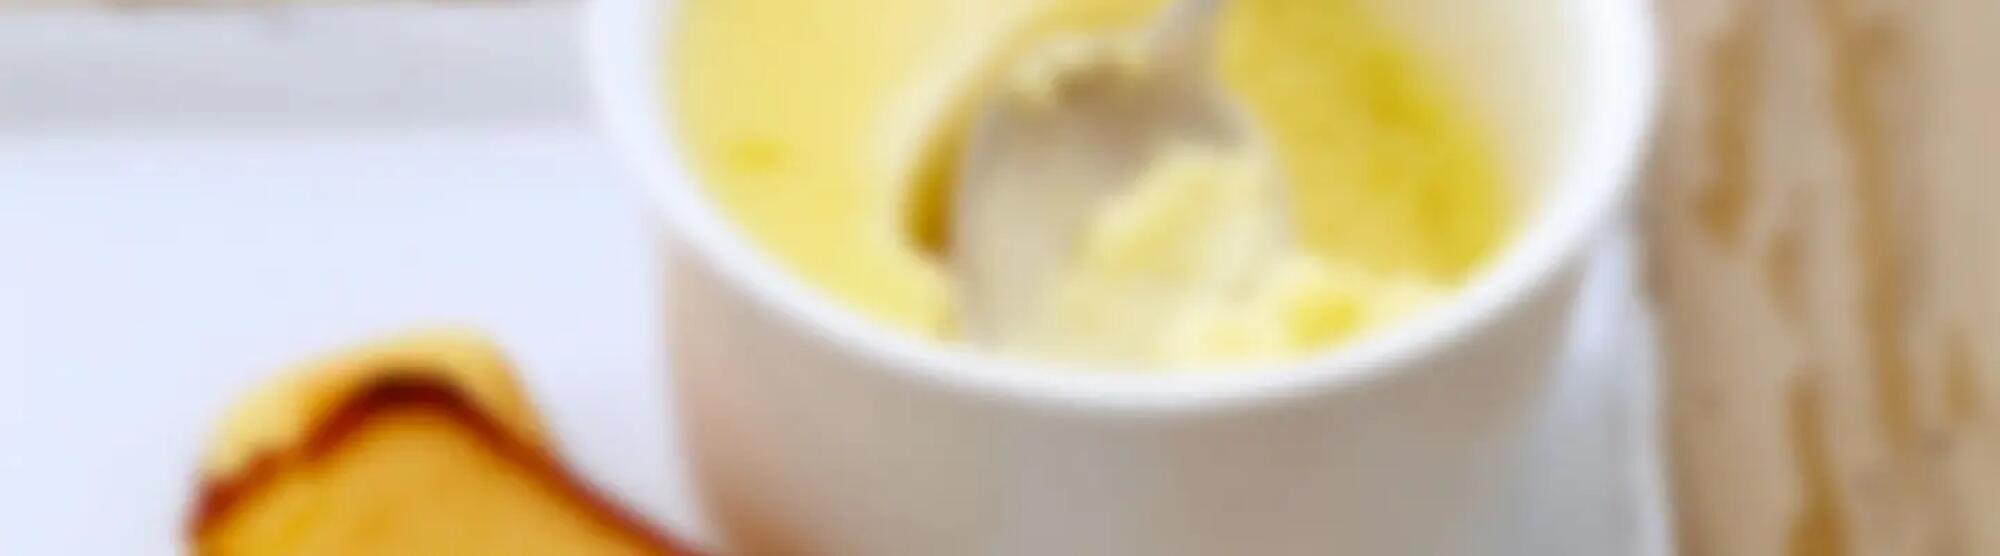 Recette : Petits pots de crème au citron au fromage frais